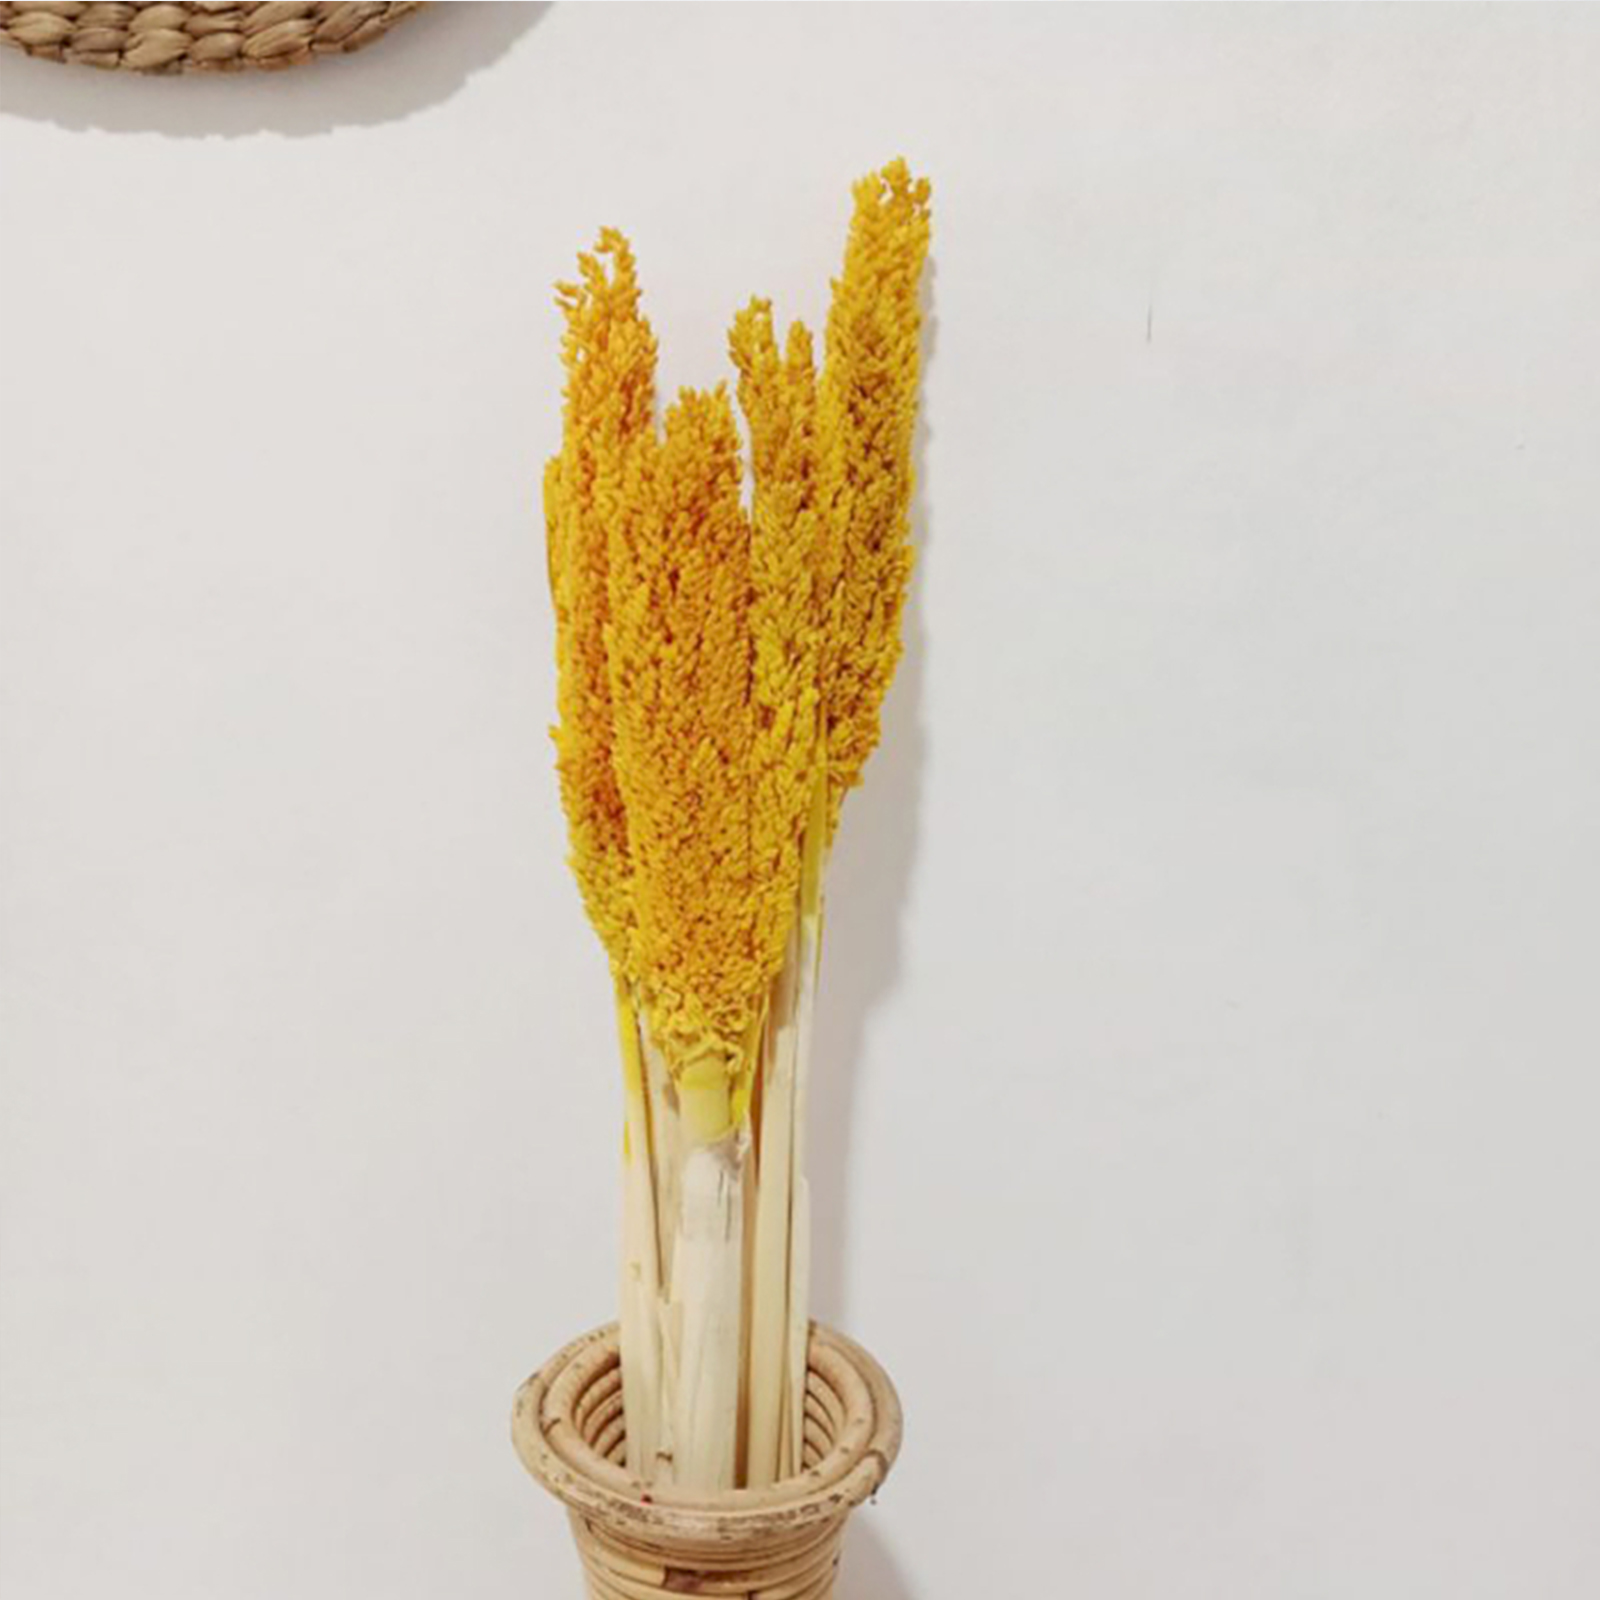 6 x Cantal Grass Bunch - Amber